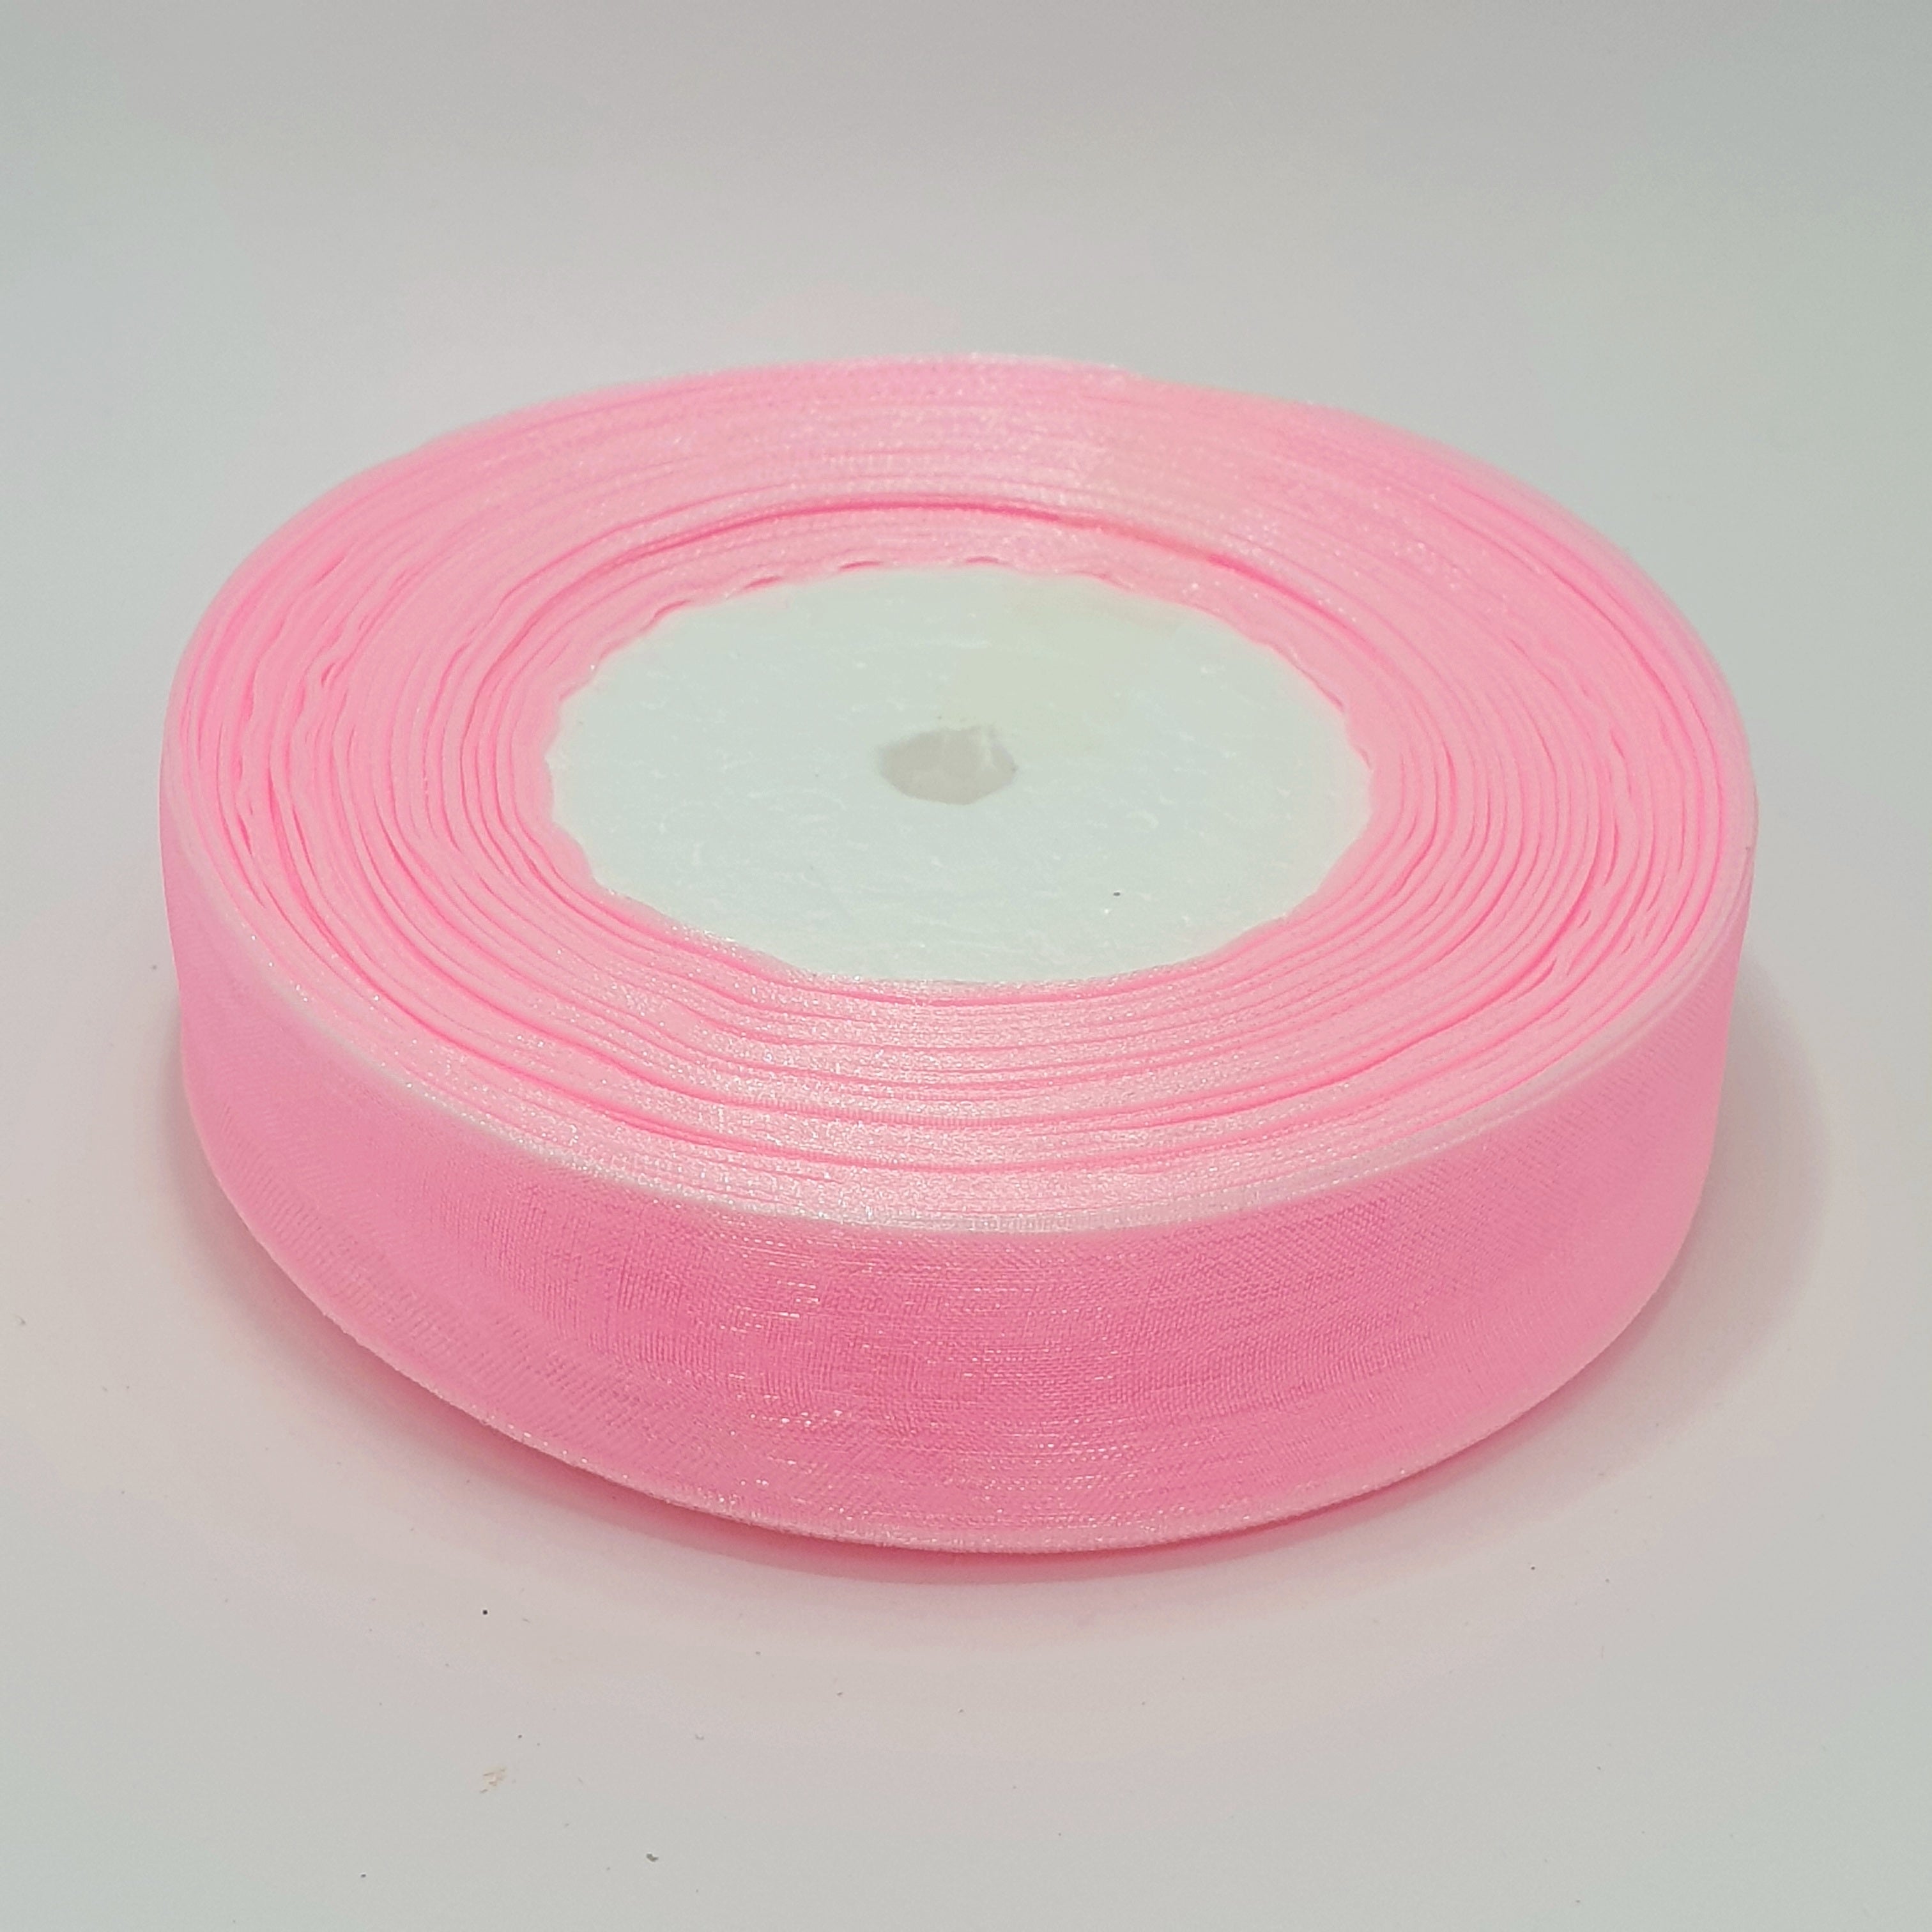 MajorCrafts 25mm 45metres Sheer Organza Fabric Ribbon Roll Pink Shade R1004